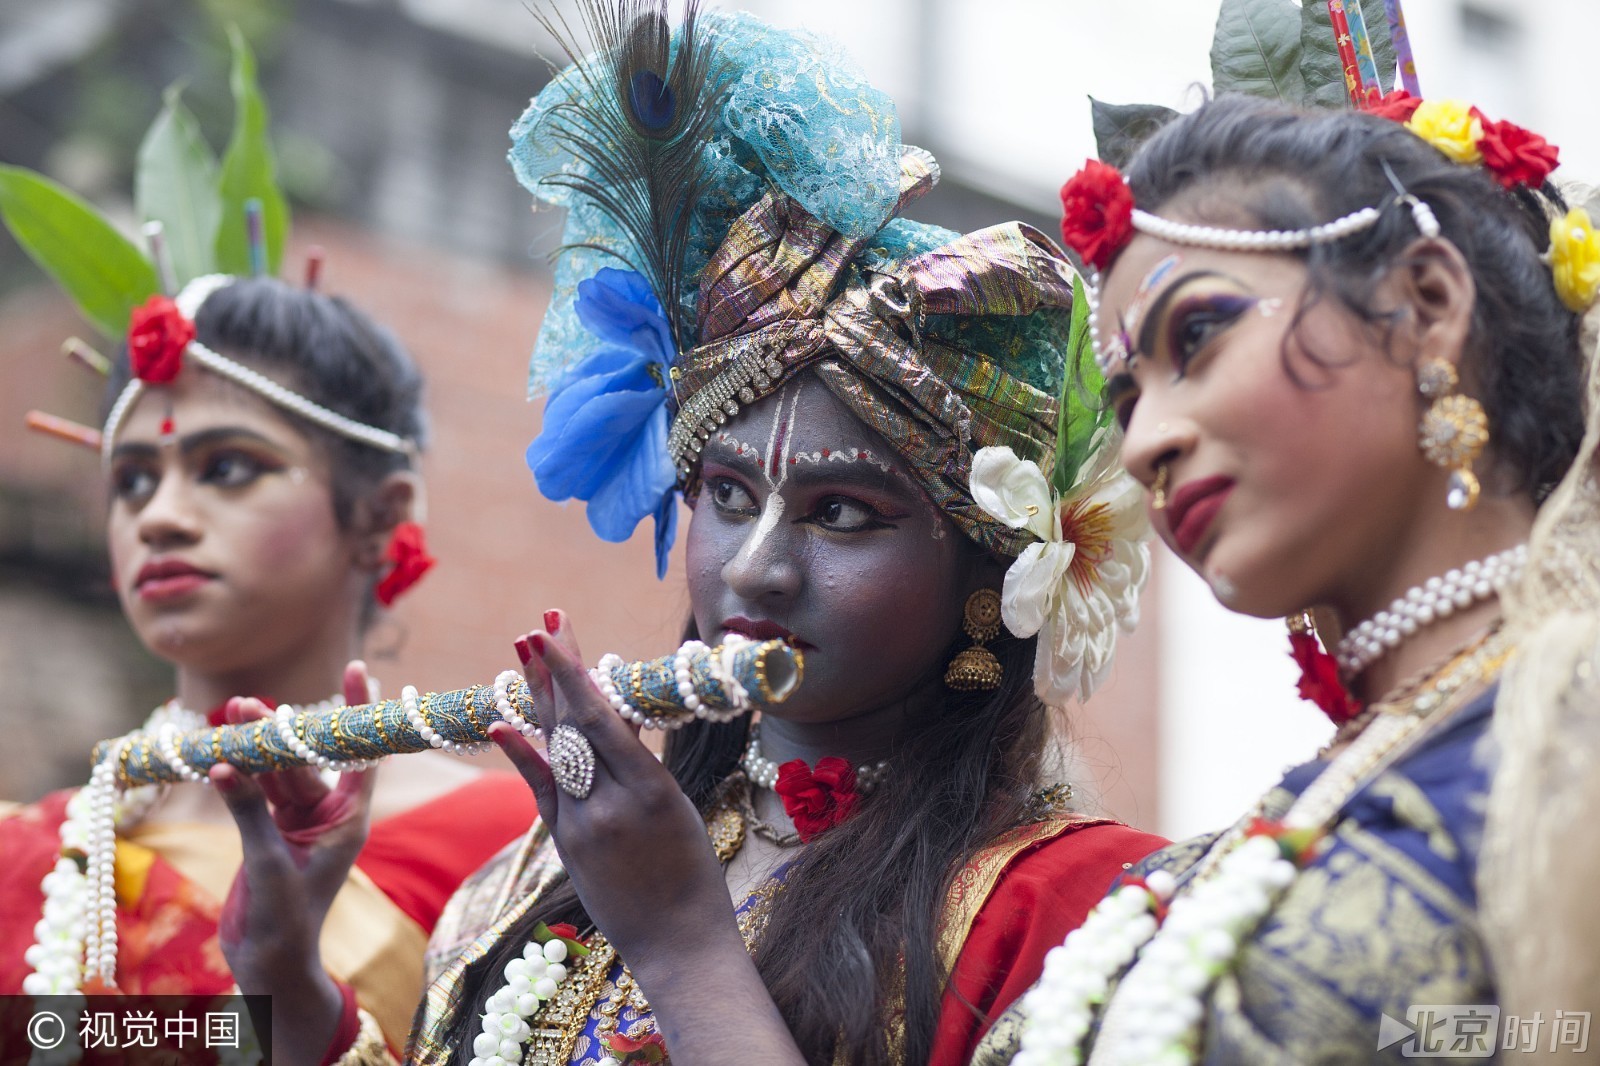 孟加拉国印度教徒庆祝黑天圣诞节 魔性装扮吸引眼球